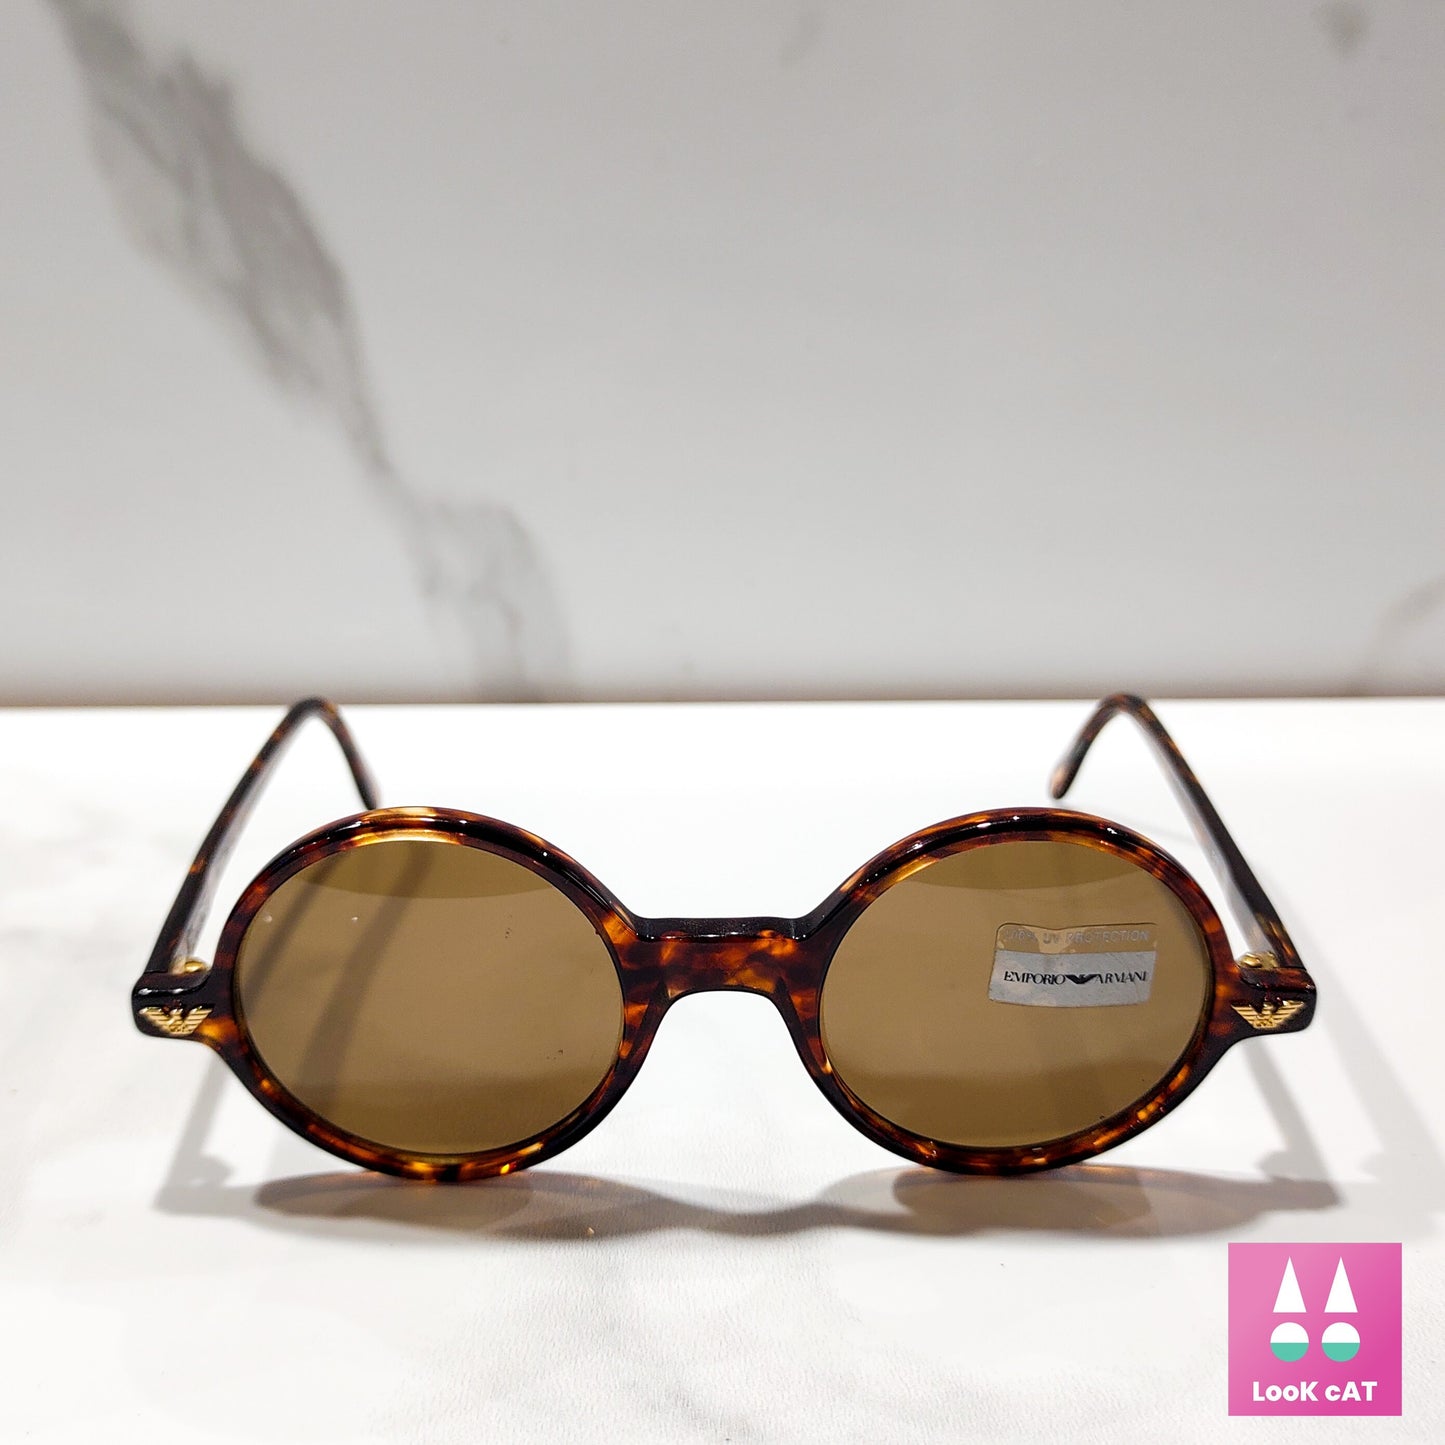 Occhiali da sole Emporio Armani 501 Giorgio Armani lunetta tonalità brille pantos anni '90 vintage made in Italy